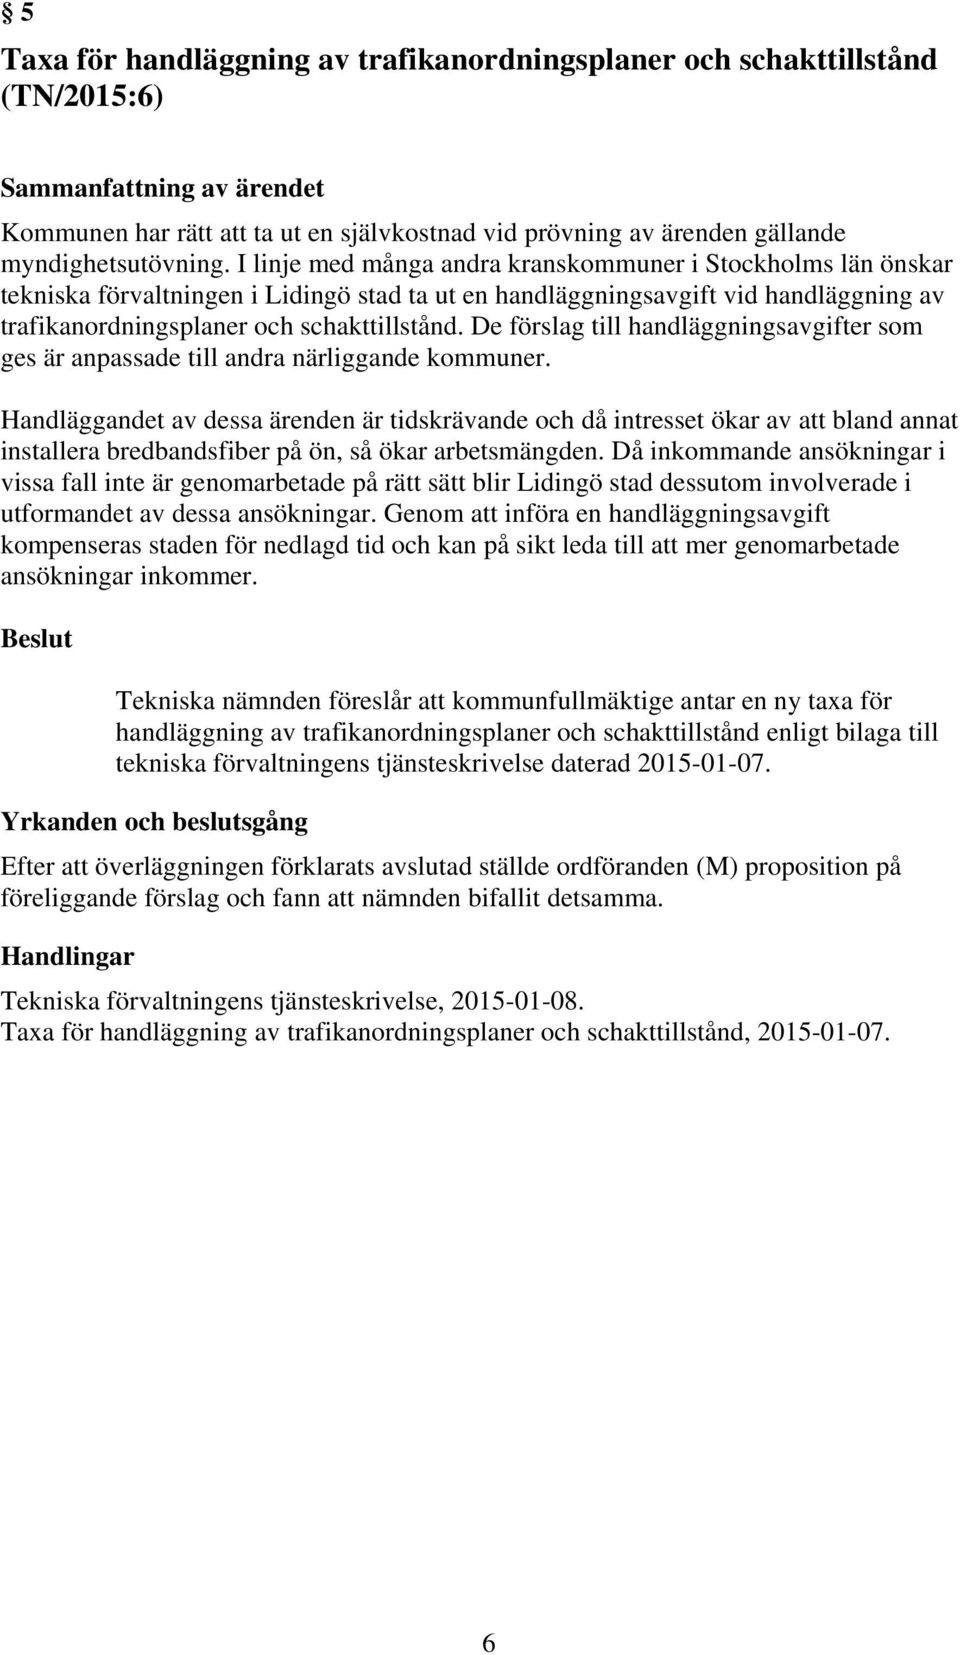 I linje med många andra kranskommuner i Stockholms län önskar tekniska förvaltningen i Lidingö stad ta ut en handläggningsavgift vid handläggning av trafikanordningsplaner och schakttillstånd.